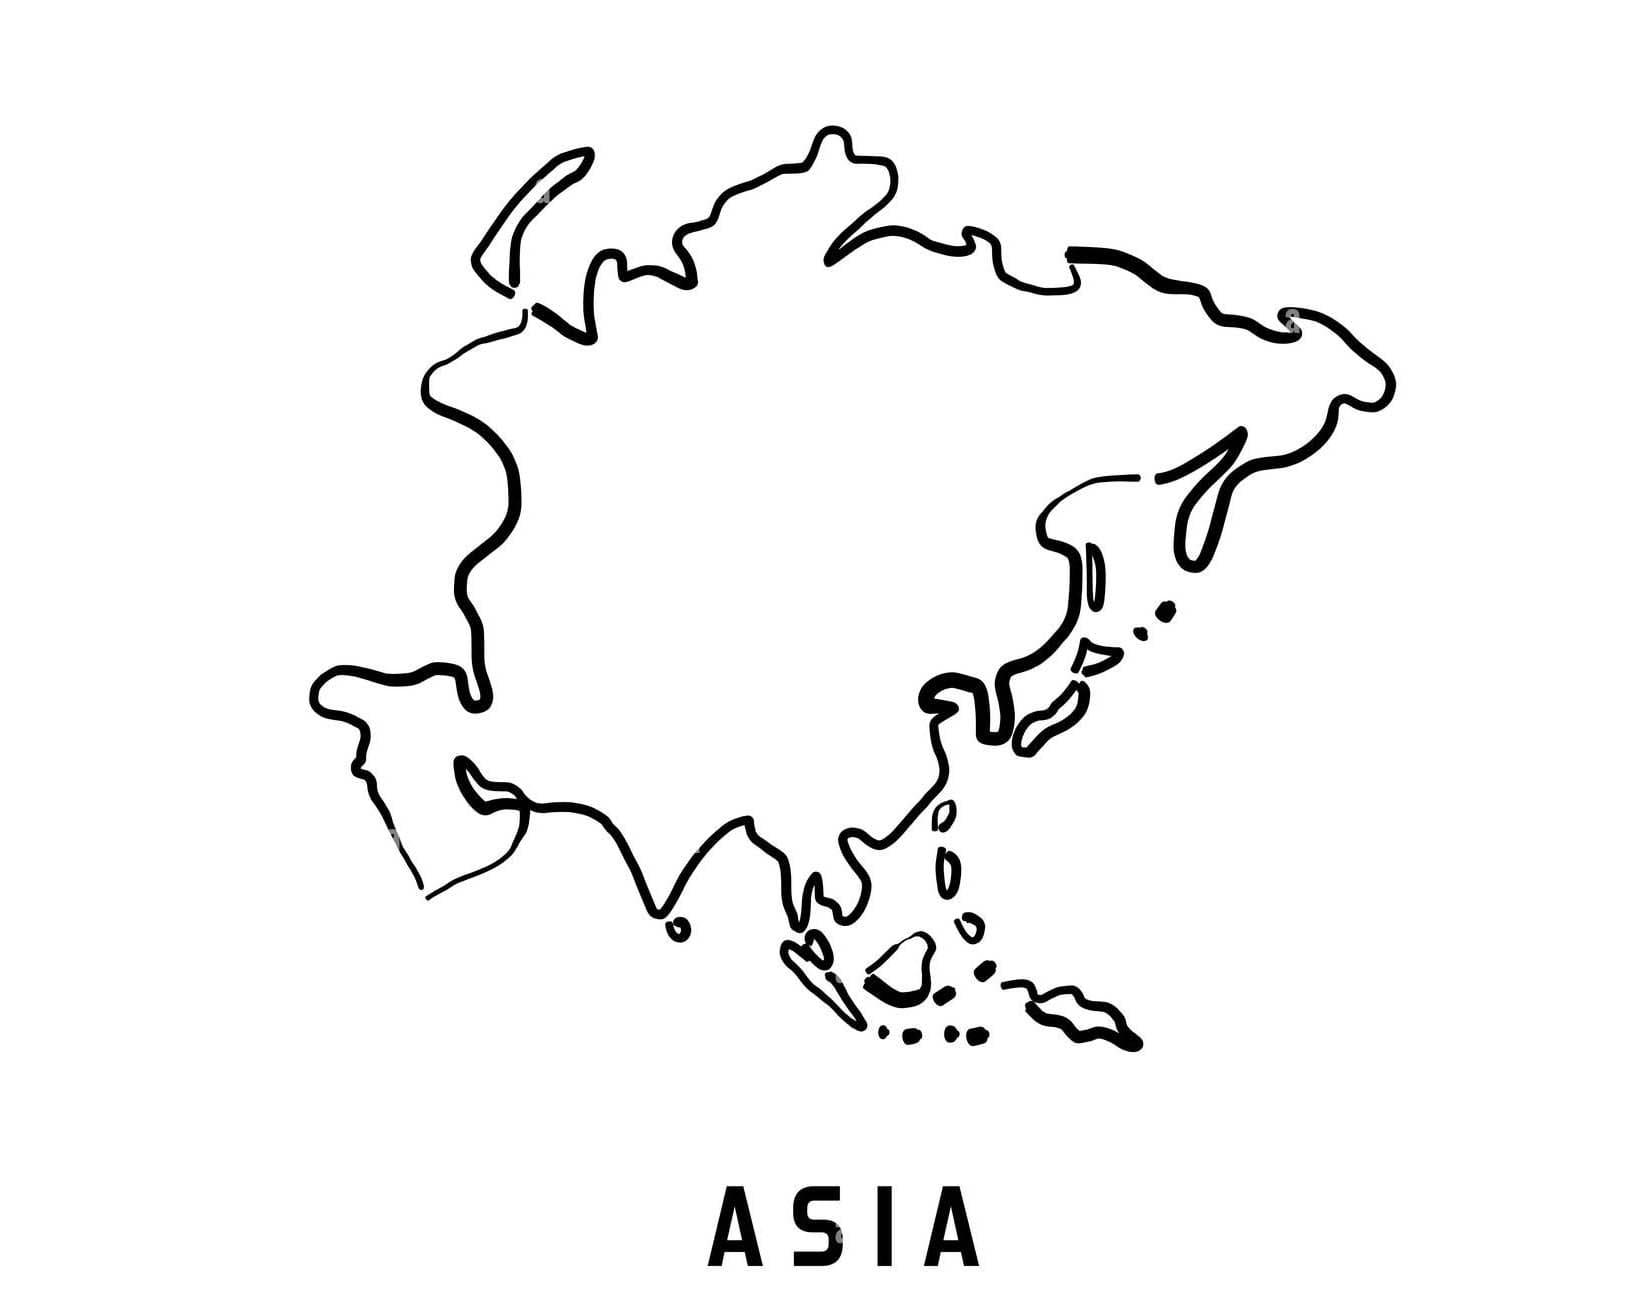 빈 아시아 지도 외곽선 coloring page